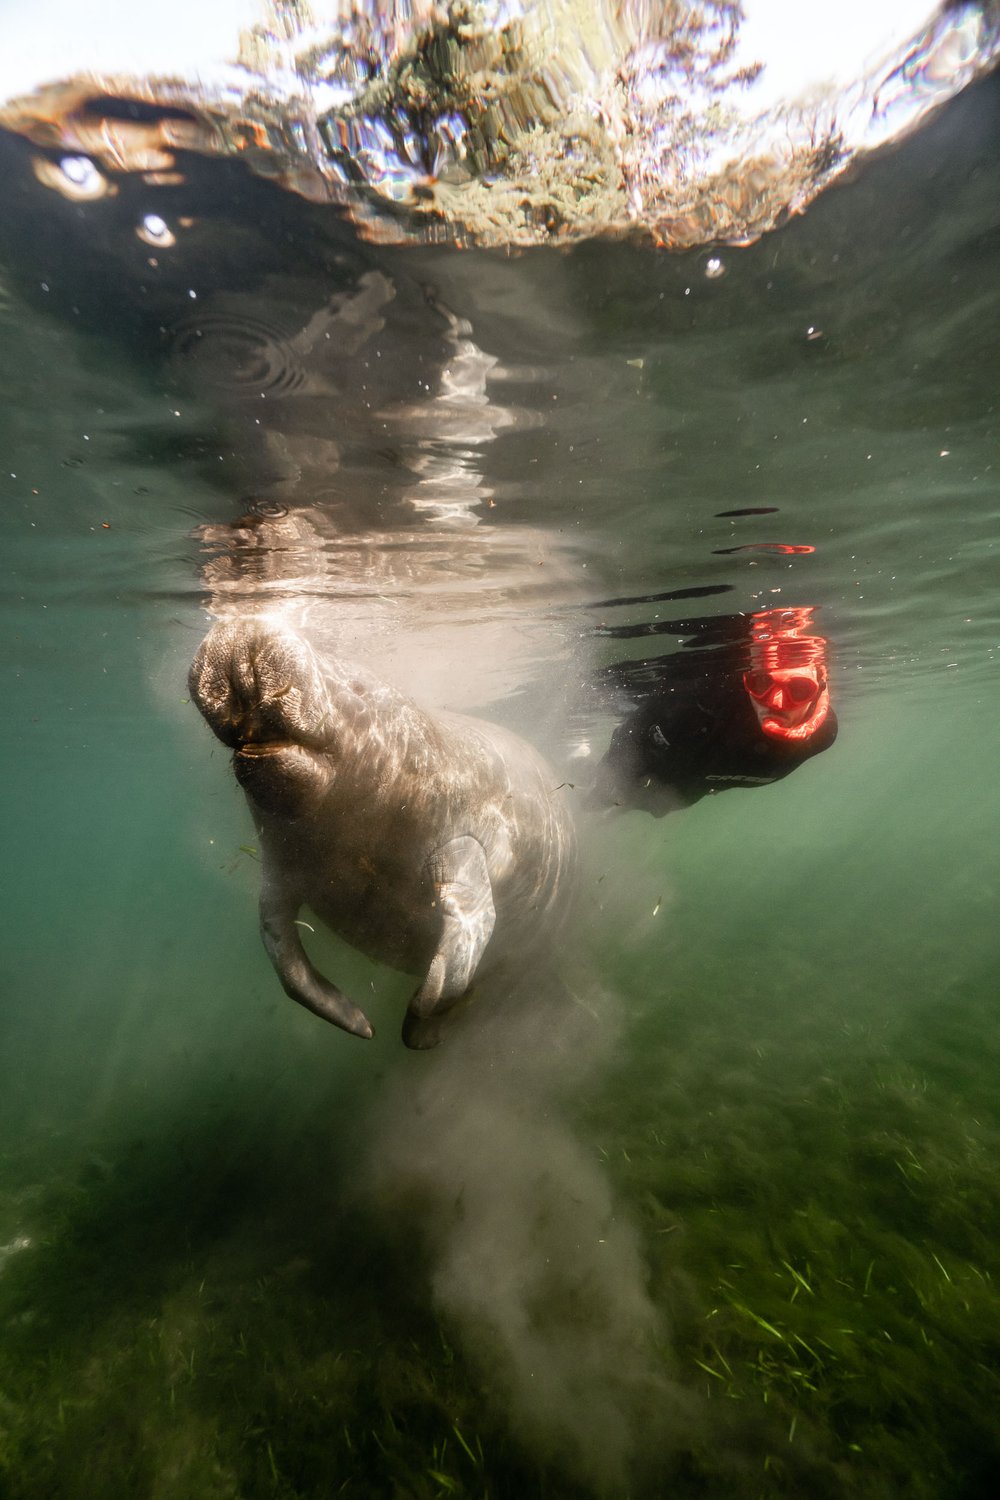 Underwater photographer and manatee